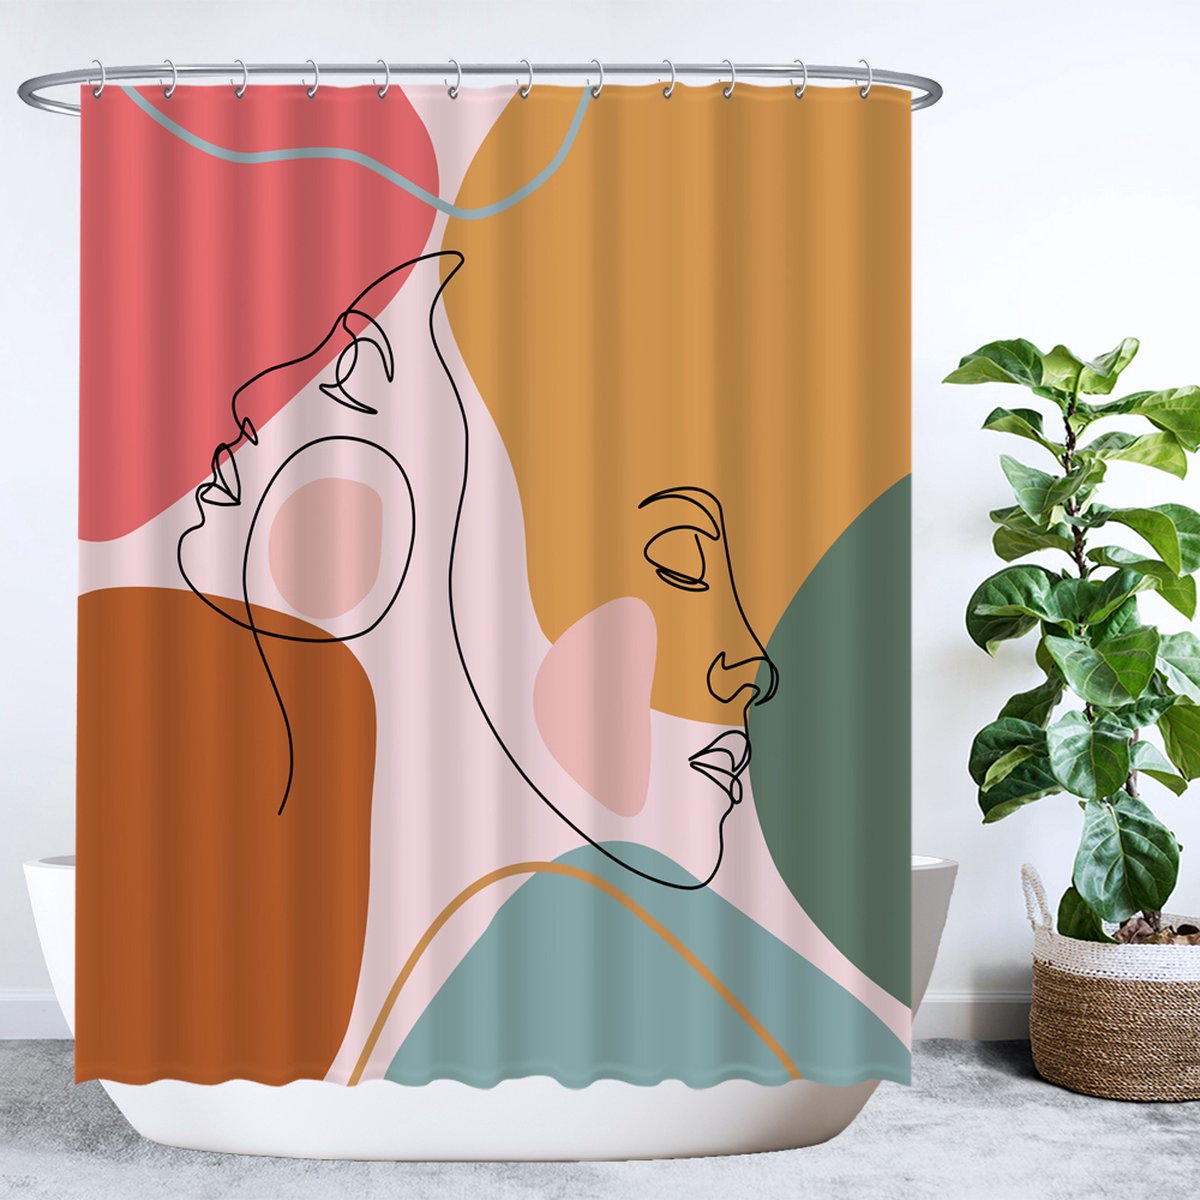 Ulticool Douchegordijn - Gezichten Abstract Aesthetic Emotie - 180 x 200 cm - semi Transparant - met 12 Ringen Wit - anti Schimmel - Oker Roze Bruin Groen